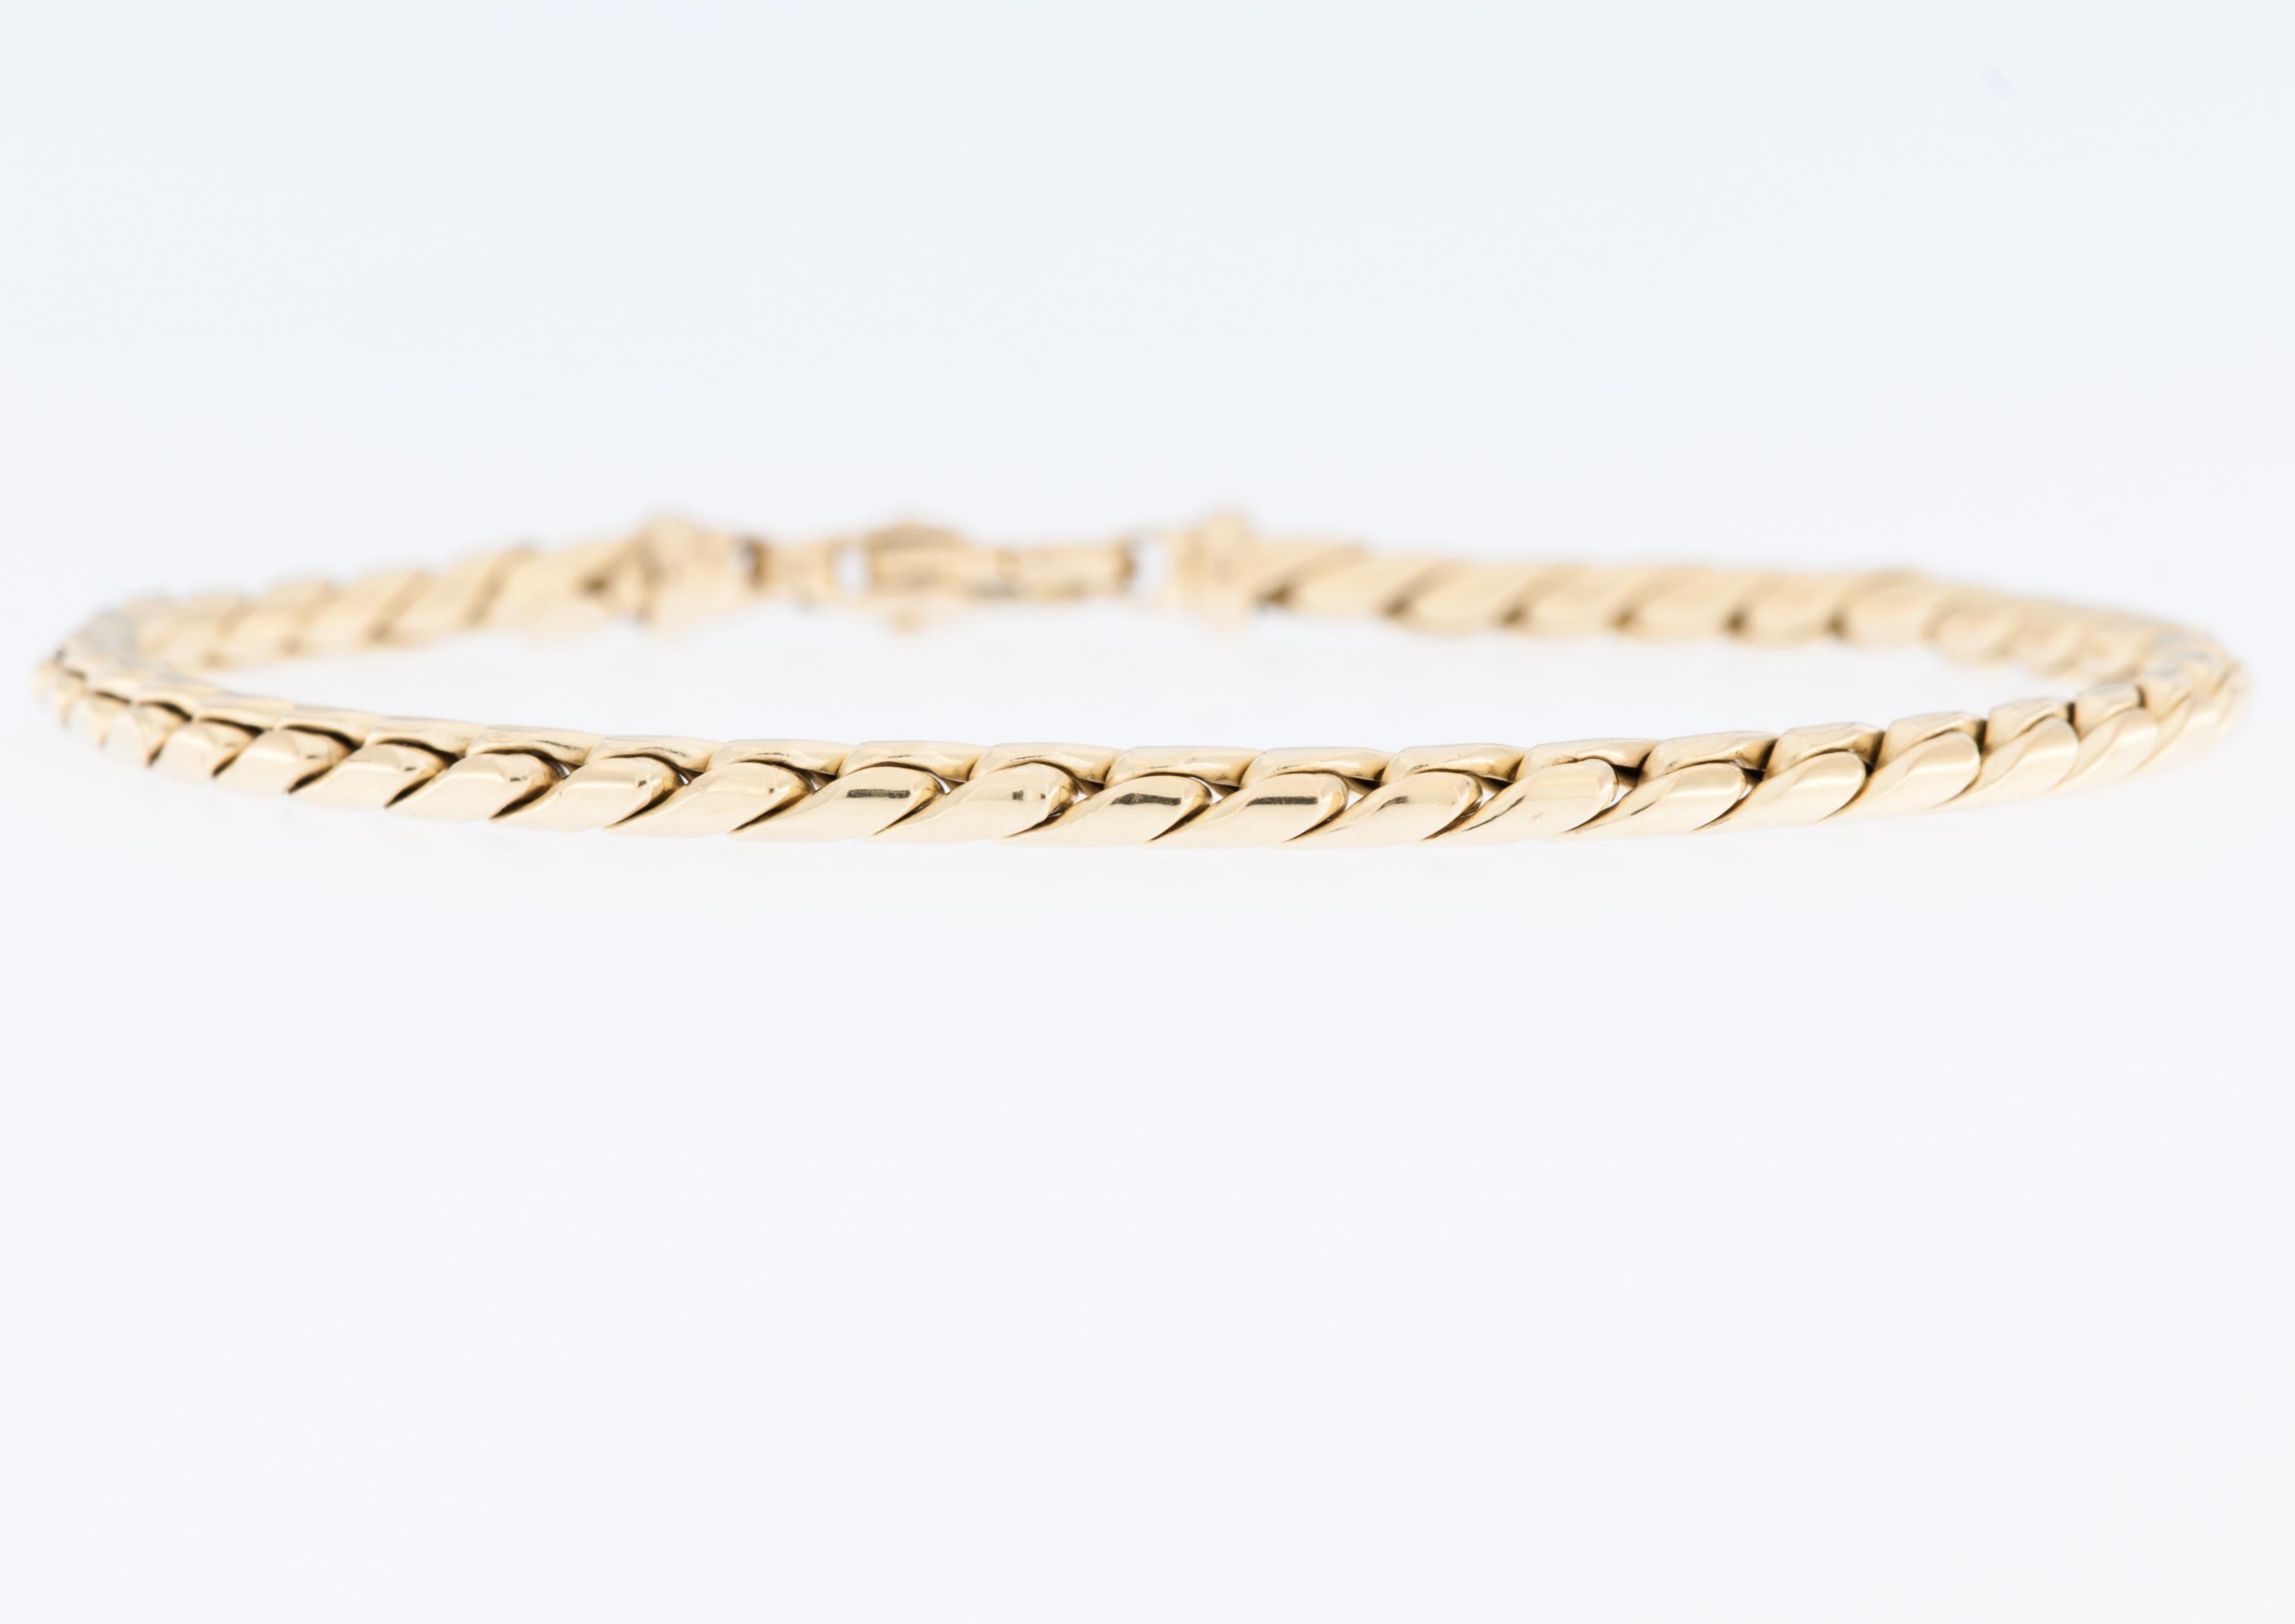 Le bracelet moderne italien en or jaune 18kt respire l'élégance contemporaine et la sophistication.

Ce bracelet présente un design moderne et chic qui reflète les dernières tendances de la joaillerie italienne. Le design présente des lignes